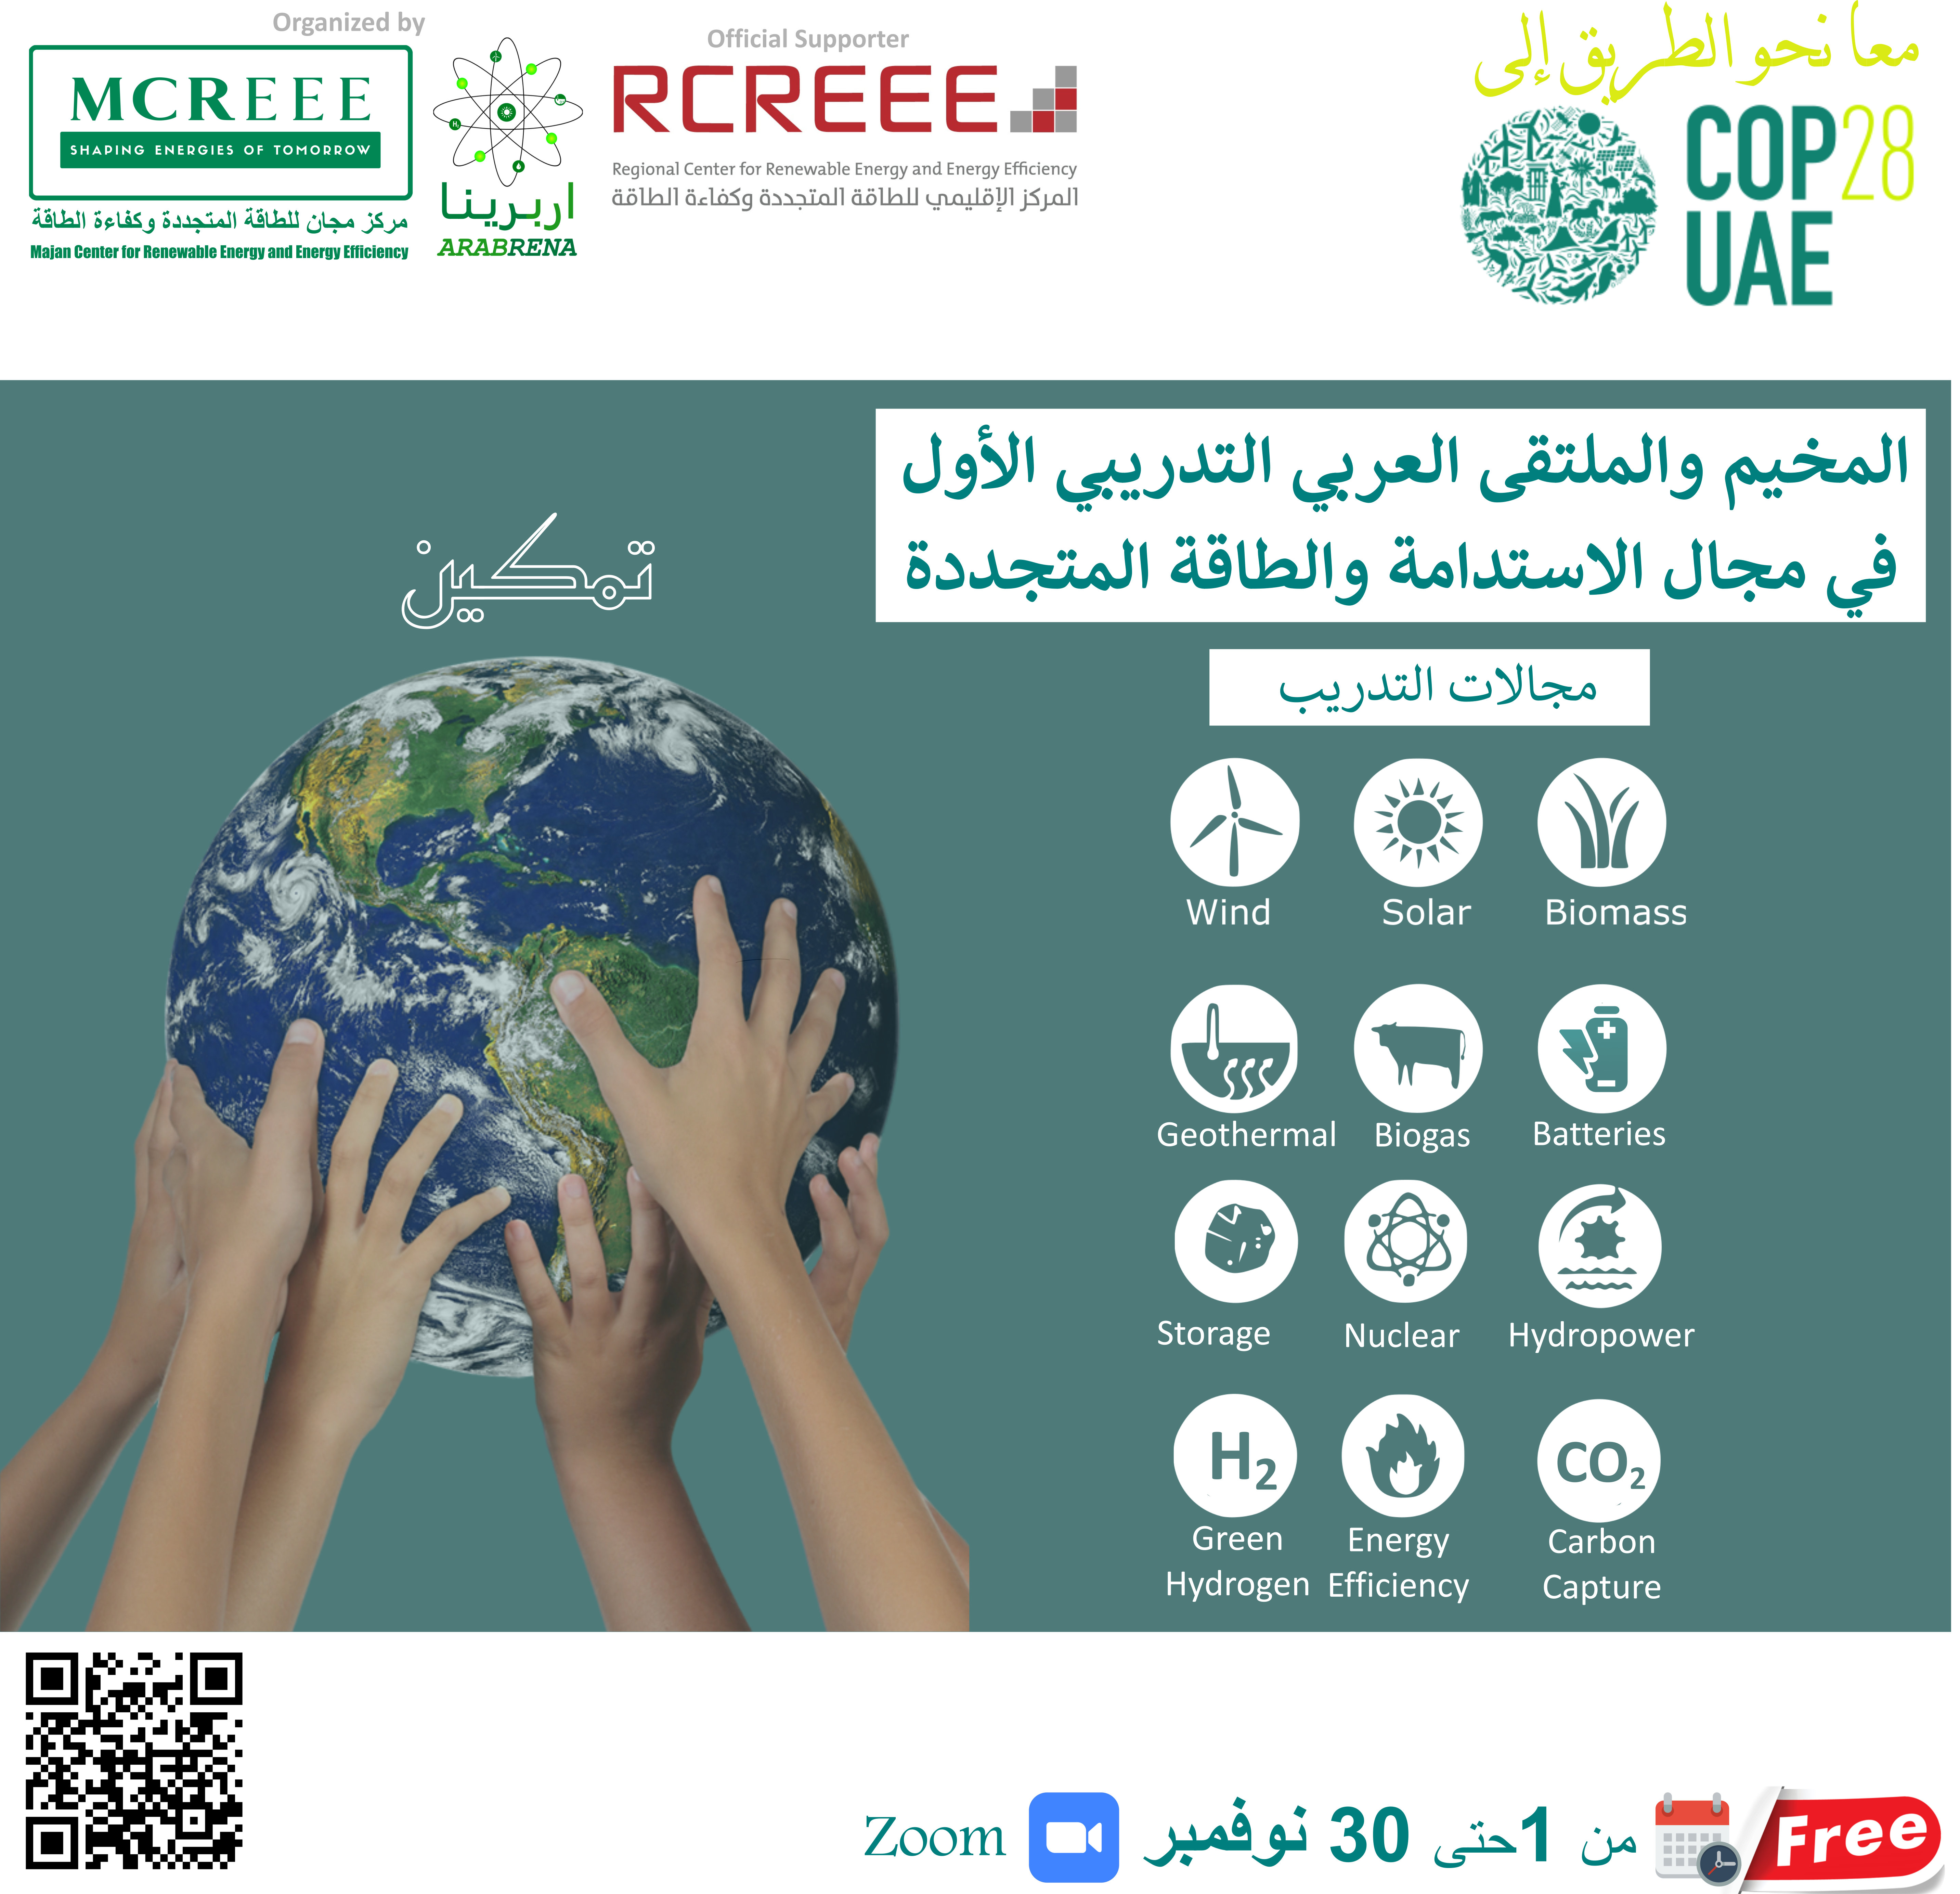 المخيم والملتقى العربي التدريبي الافتراضي الأول في مجال الاستدامة والطاقة المتجددة